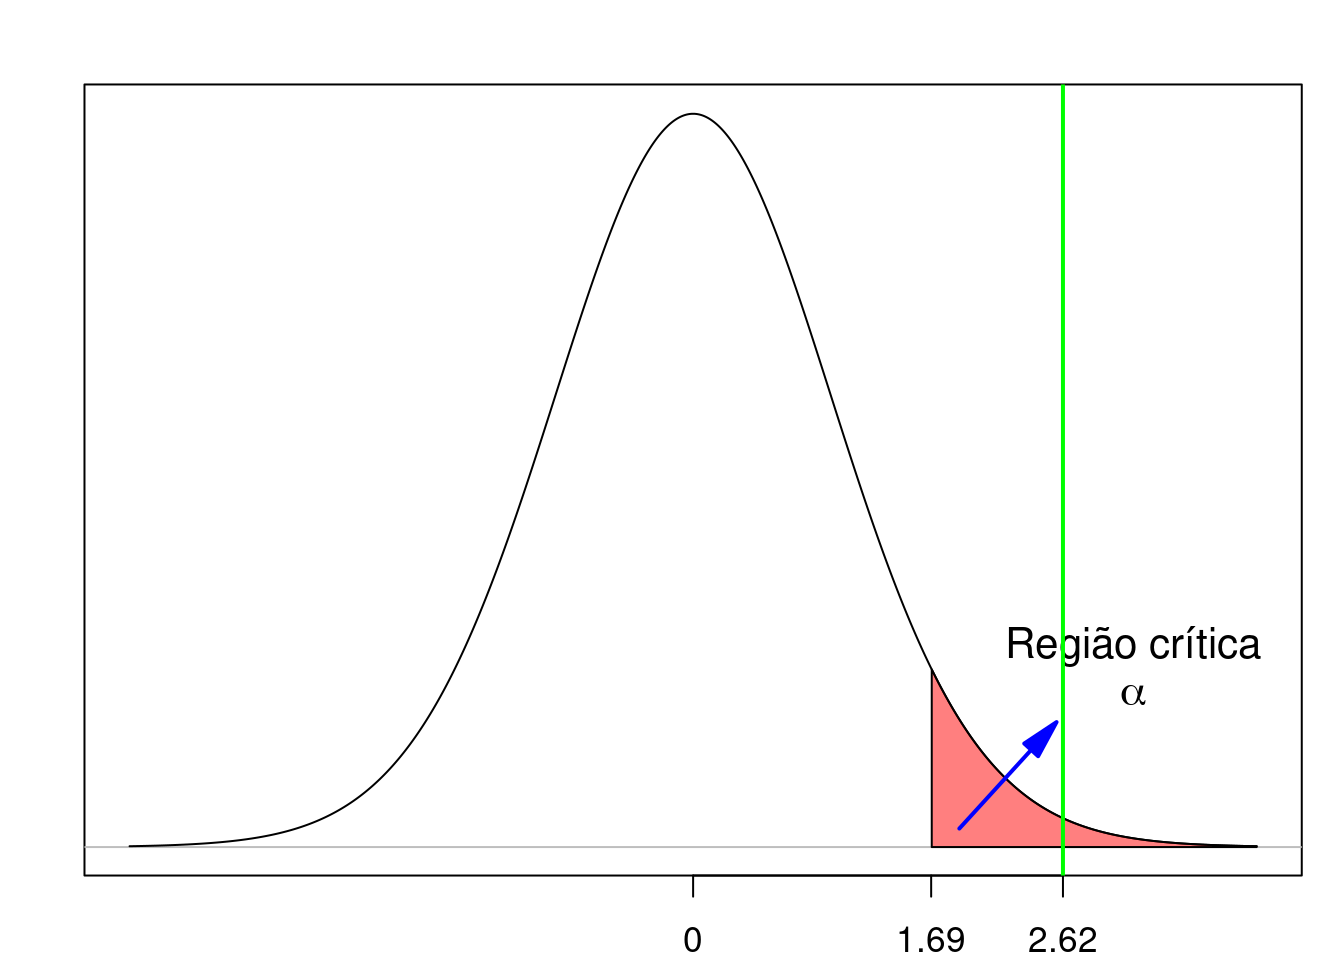 Exemplo de teste unilateral onde ocorre a rejeição da hipótese nula. A linha verde indica o valor da estatística t calculada a partir da amostra.